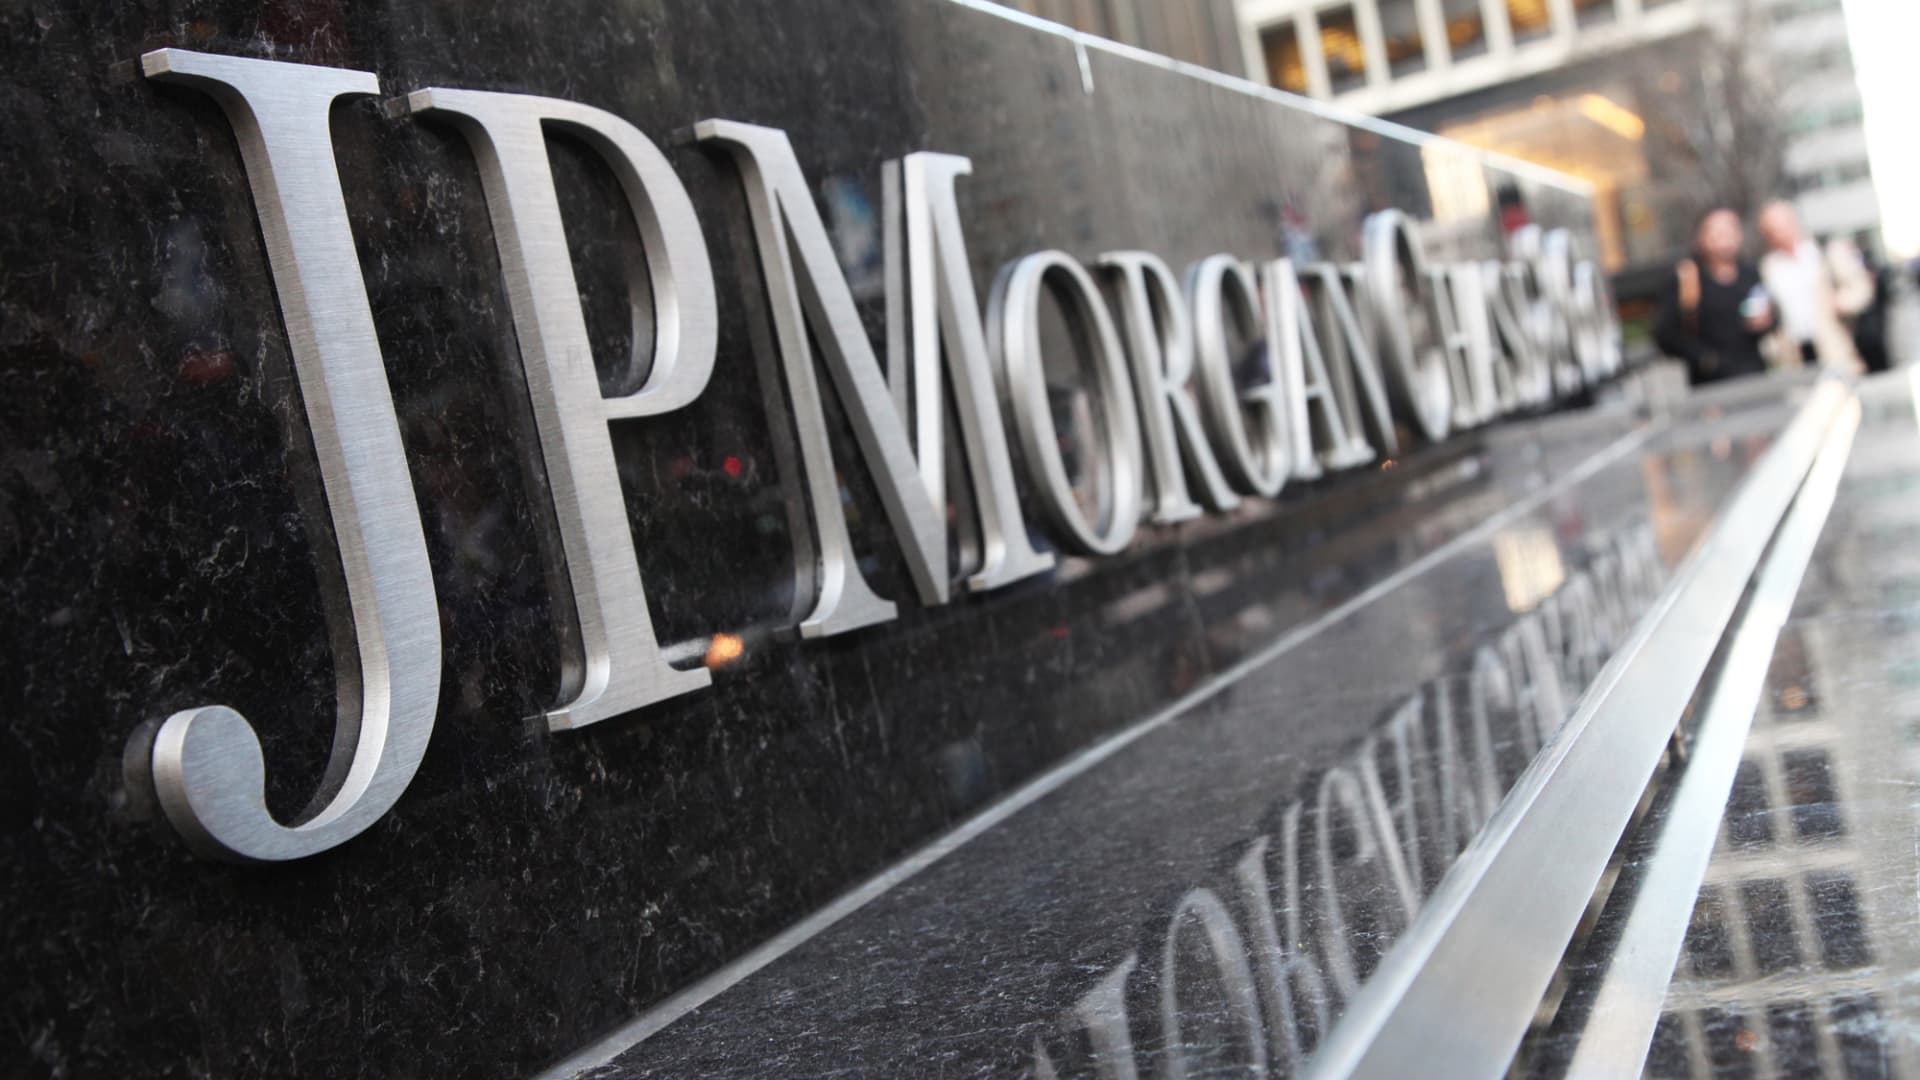 JPMorgan'dan Türkiye raporu: Riskler yukarı yönlü